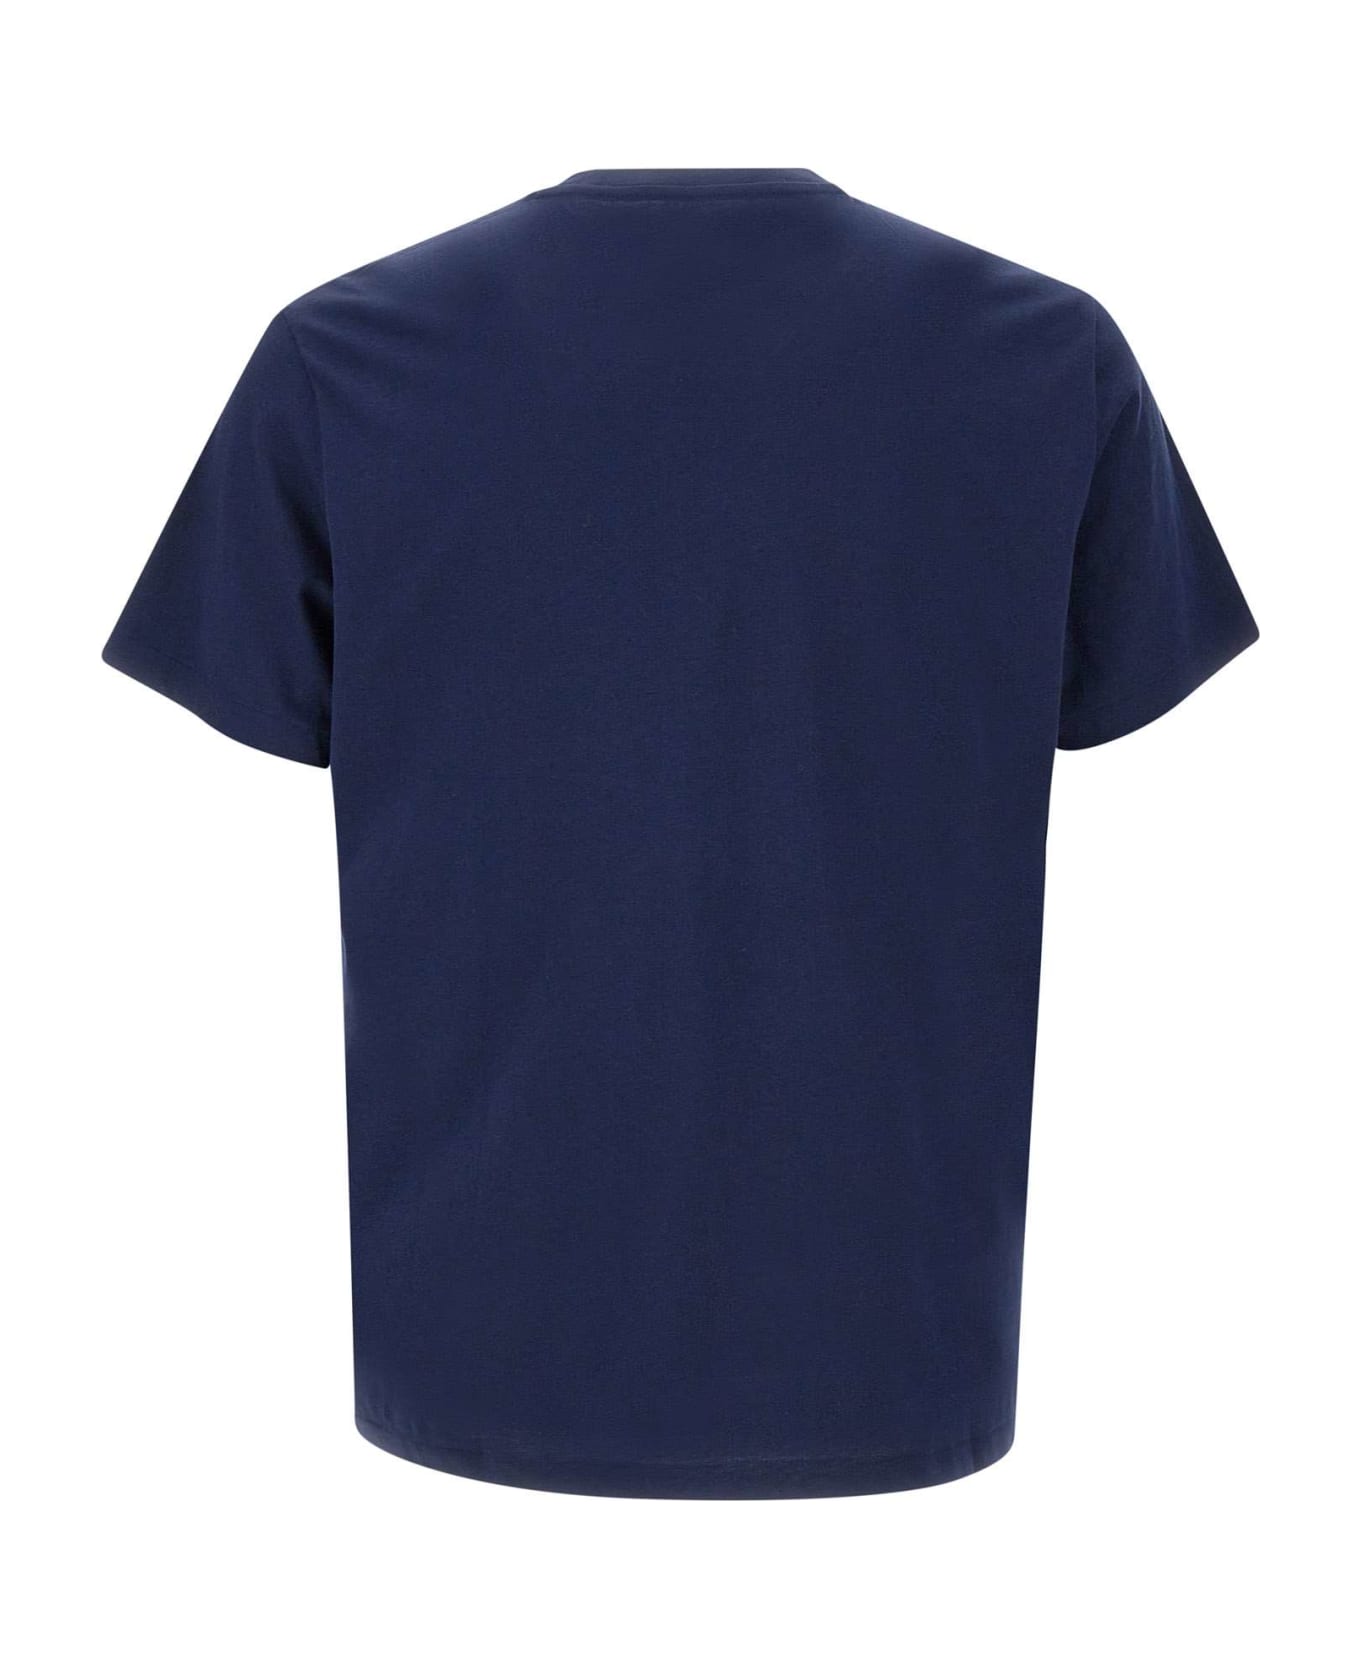 Polo Ralph Lauren "core Replen" Cotton T-shirt - BLUE シャツ